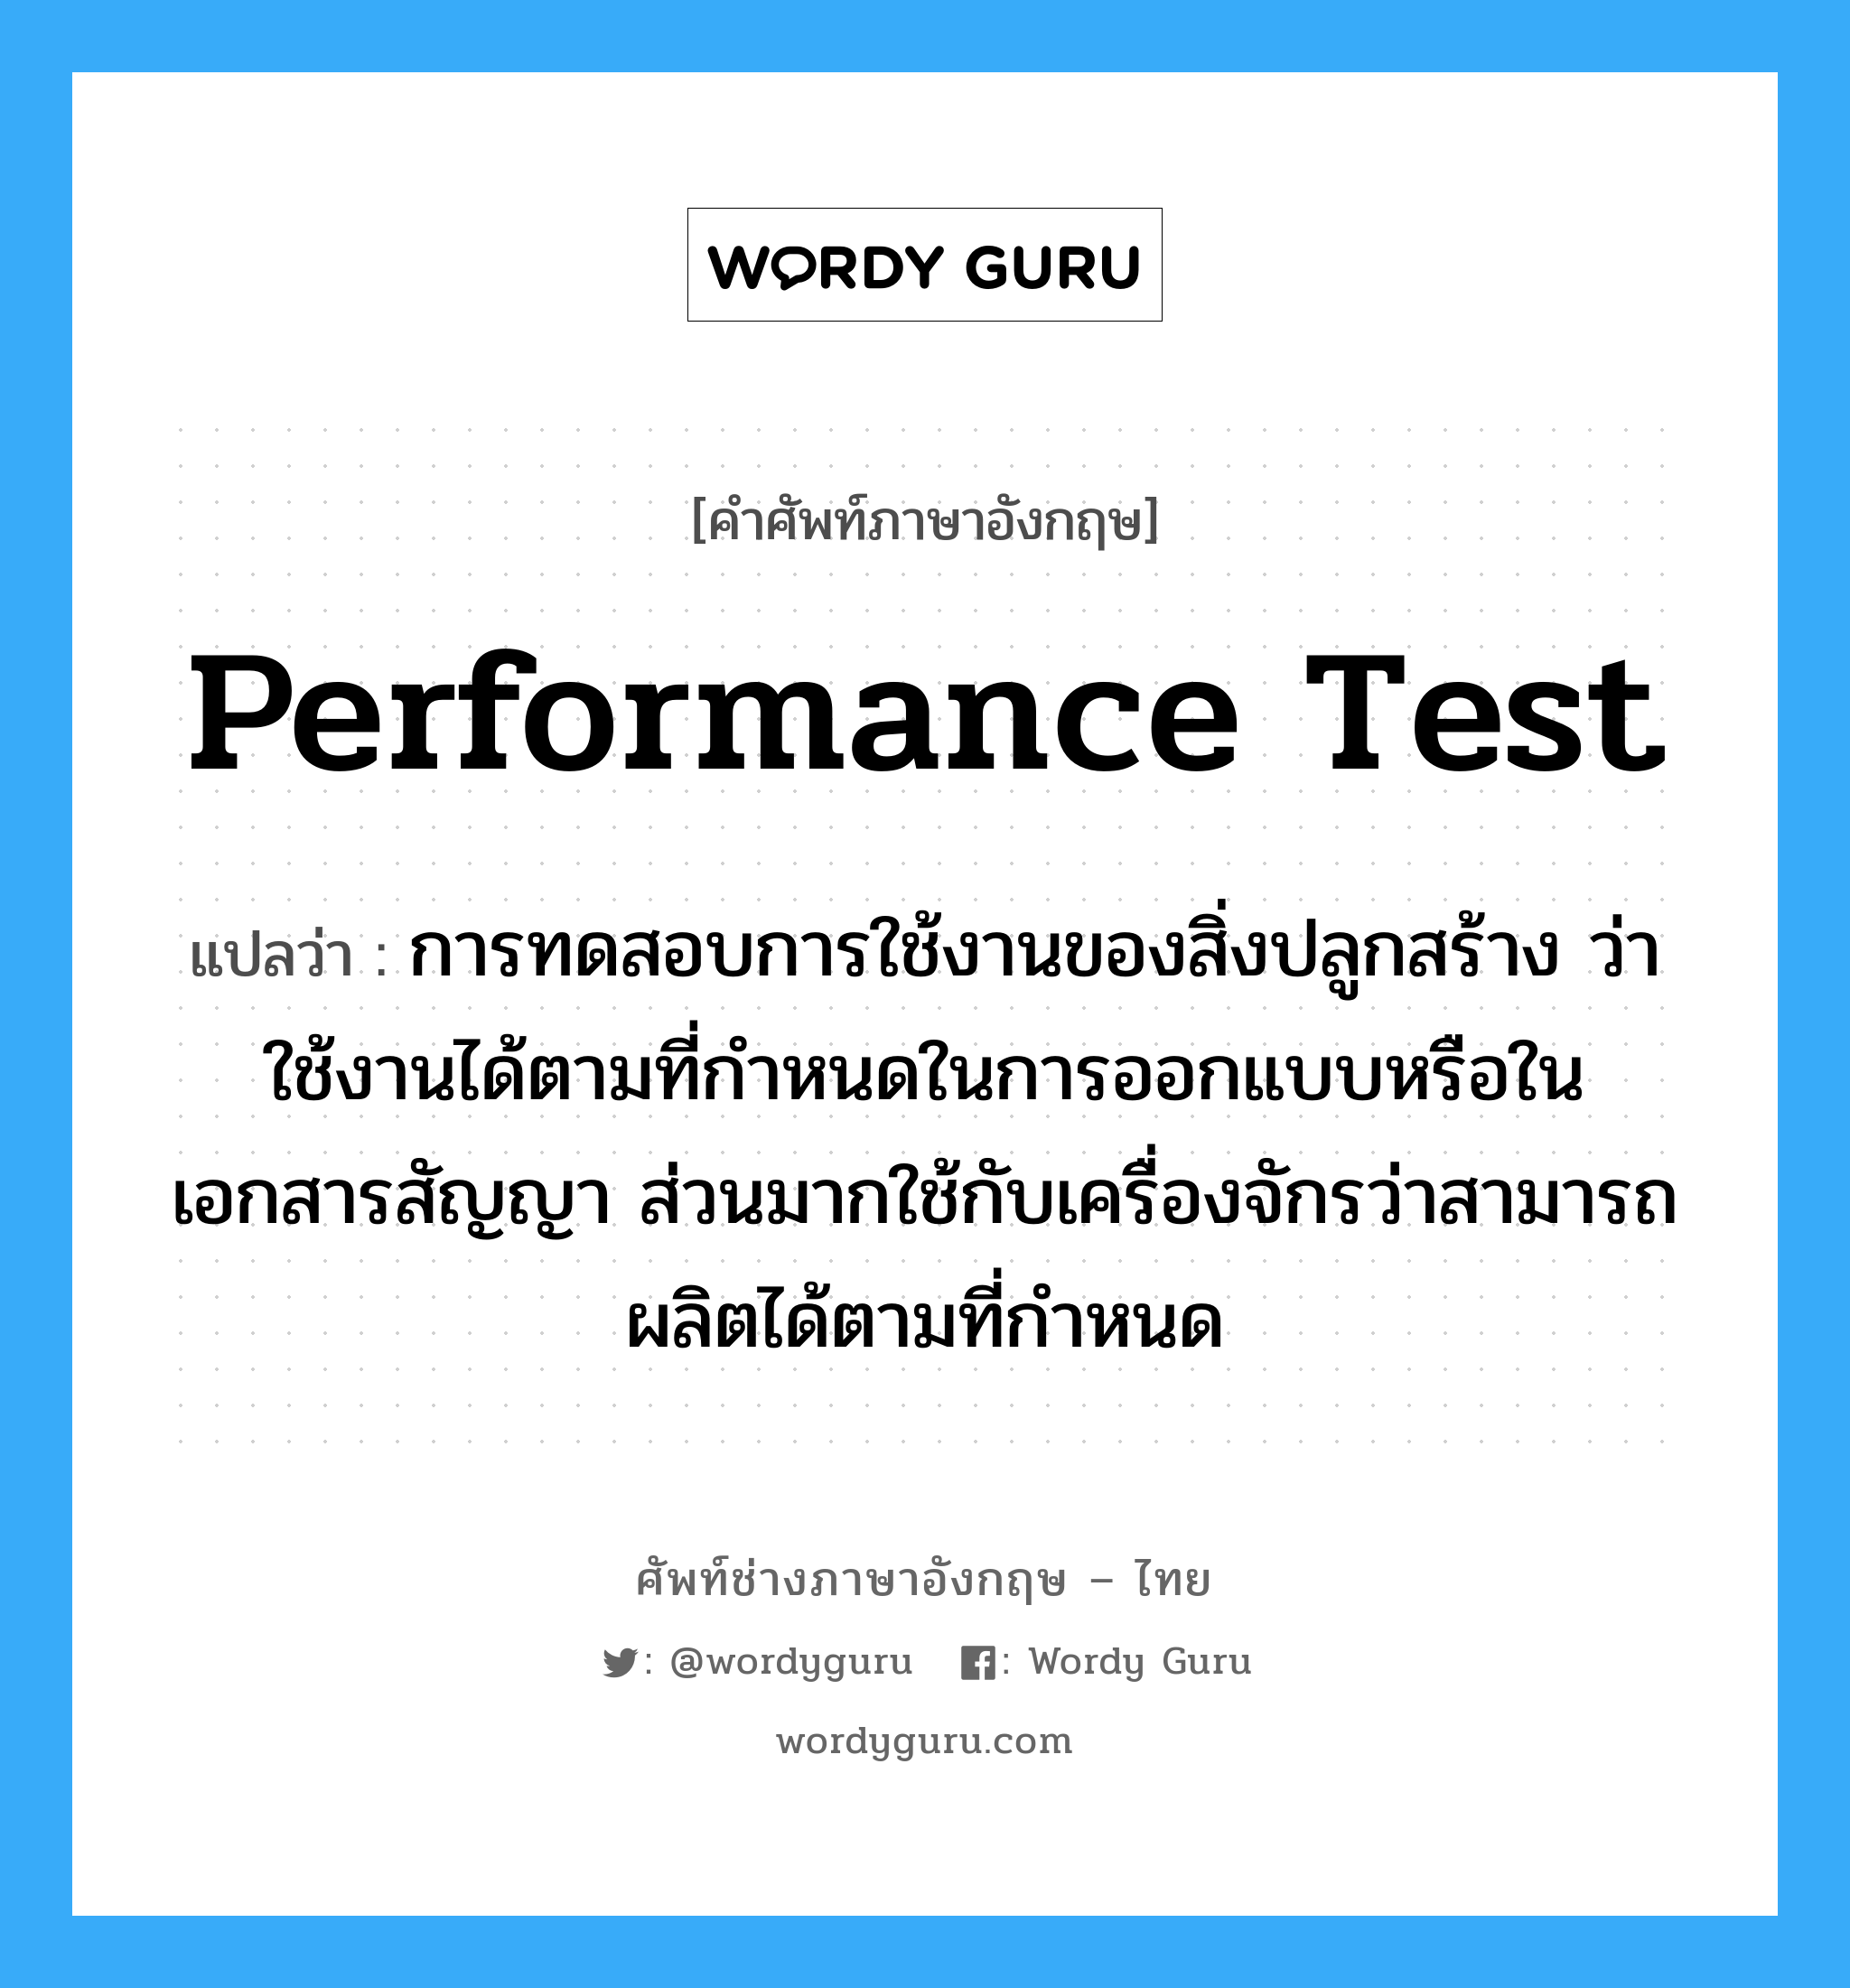 Performance Test แปลว่า?, คำศัพท์ช่างภาษาอังกฤษ - ไทย Performance Test คำศัพท์ภาษาอังกฤษ Performance Test แปลว่า การทดสอบการใช้งานของสิ่งปลูกสร้าง ว่าใช้งานได้ตามที่กำหนดในการออกแบบหรือในเอกสารสัญญา ส่วนมากใช้กับเครื่องจักรว่าสามารถผลิตได้ตามที่กำหนด